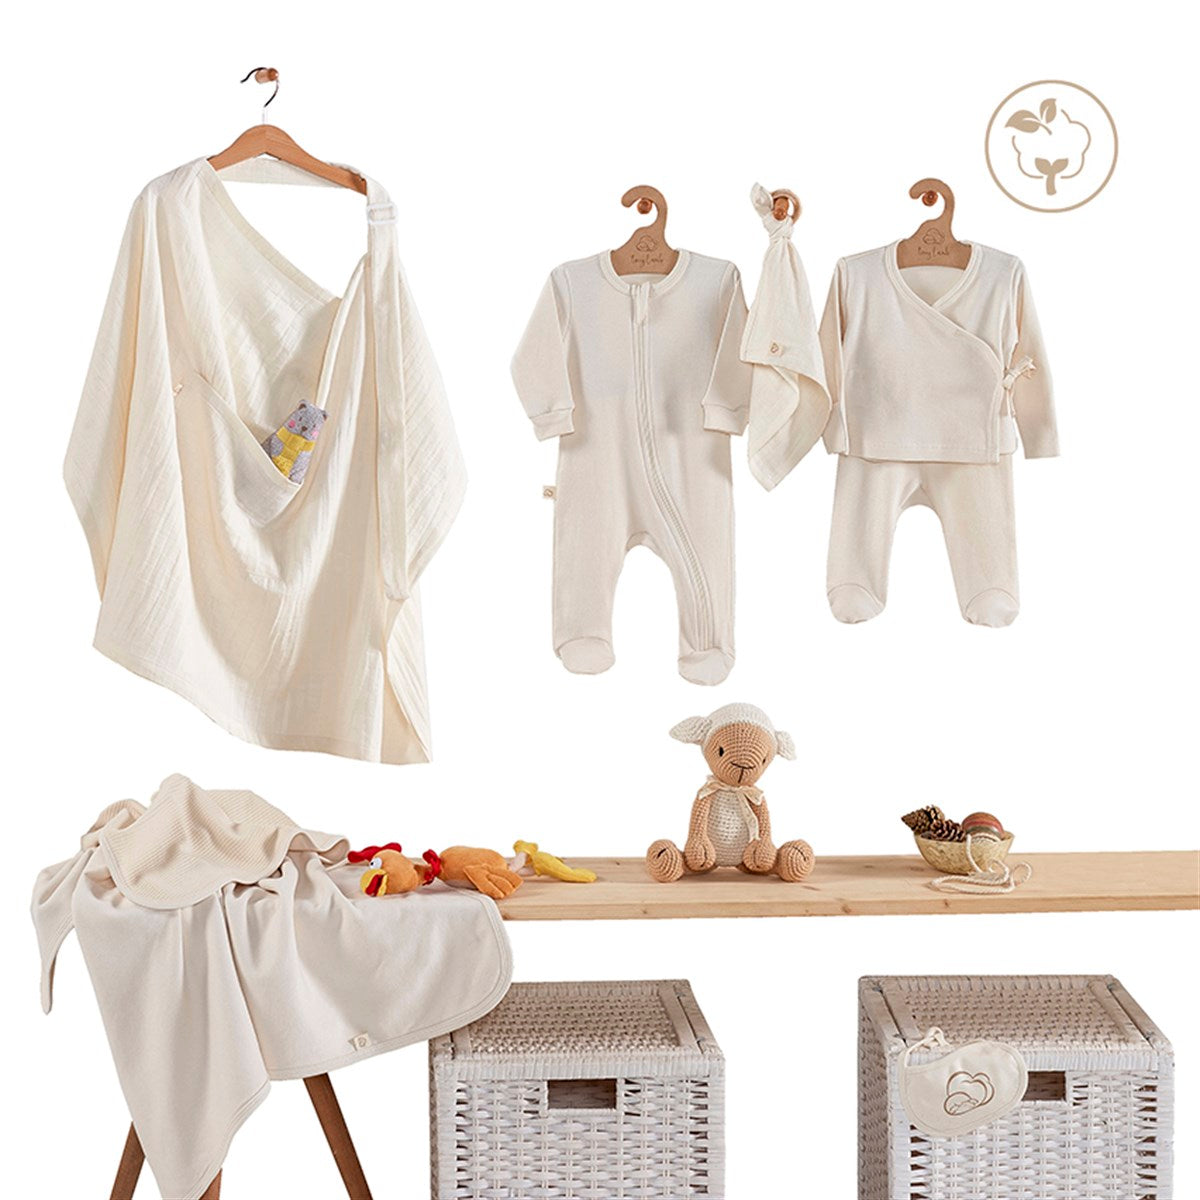 Neugeborenen-Set - 11-teilig | Bio-Baumwolle Krankenhaus-Ausstattungsset zur Geburt für Mädchen & Jungen